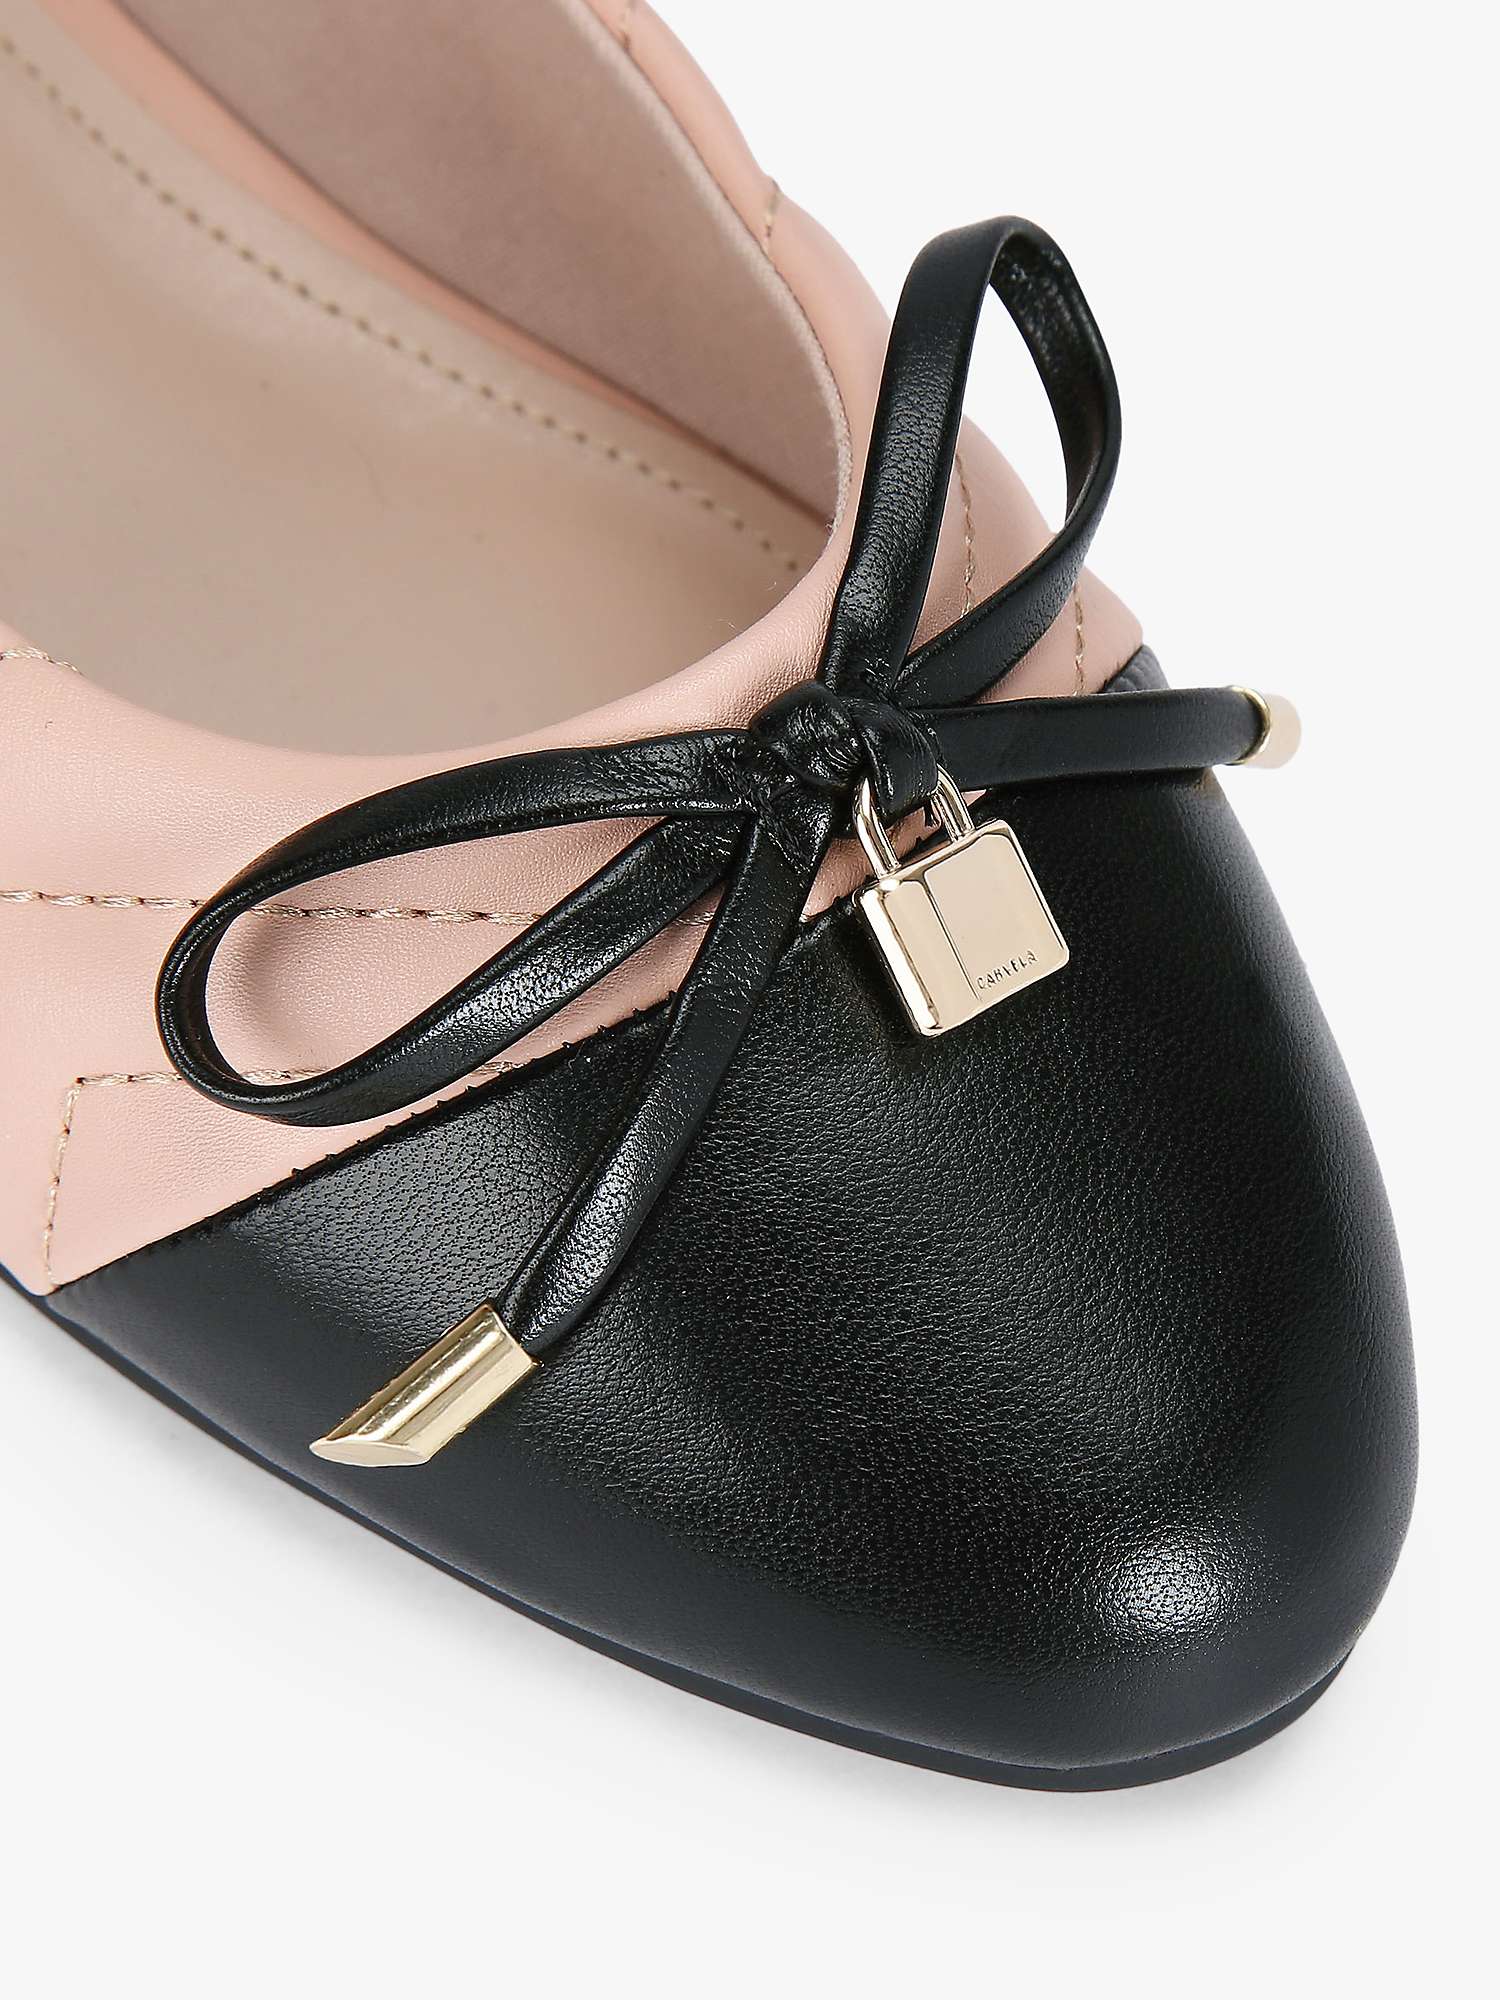 Buy Carvela Lara Ballerina Shoes, Pink/Black Online at johnlewis.com